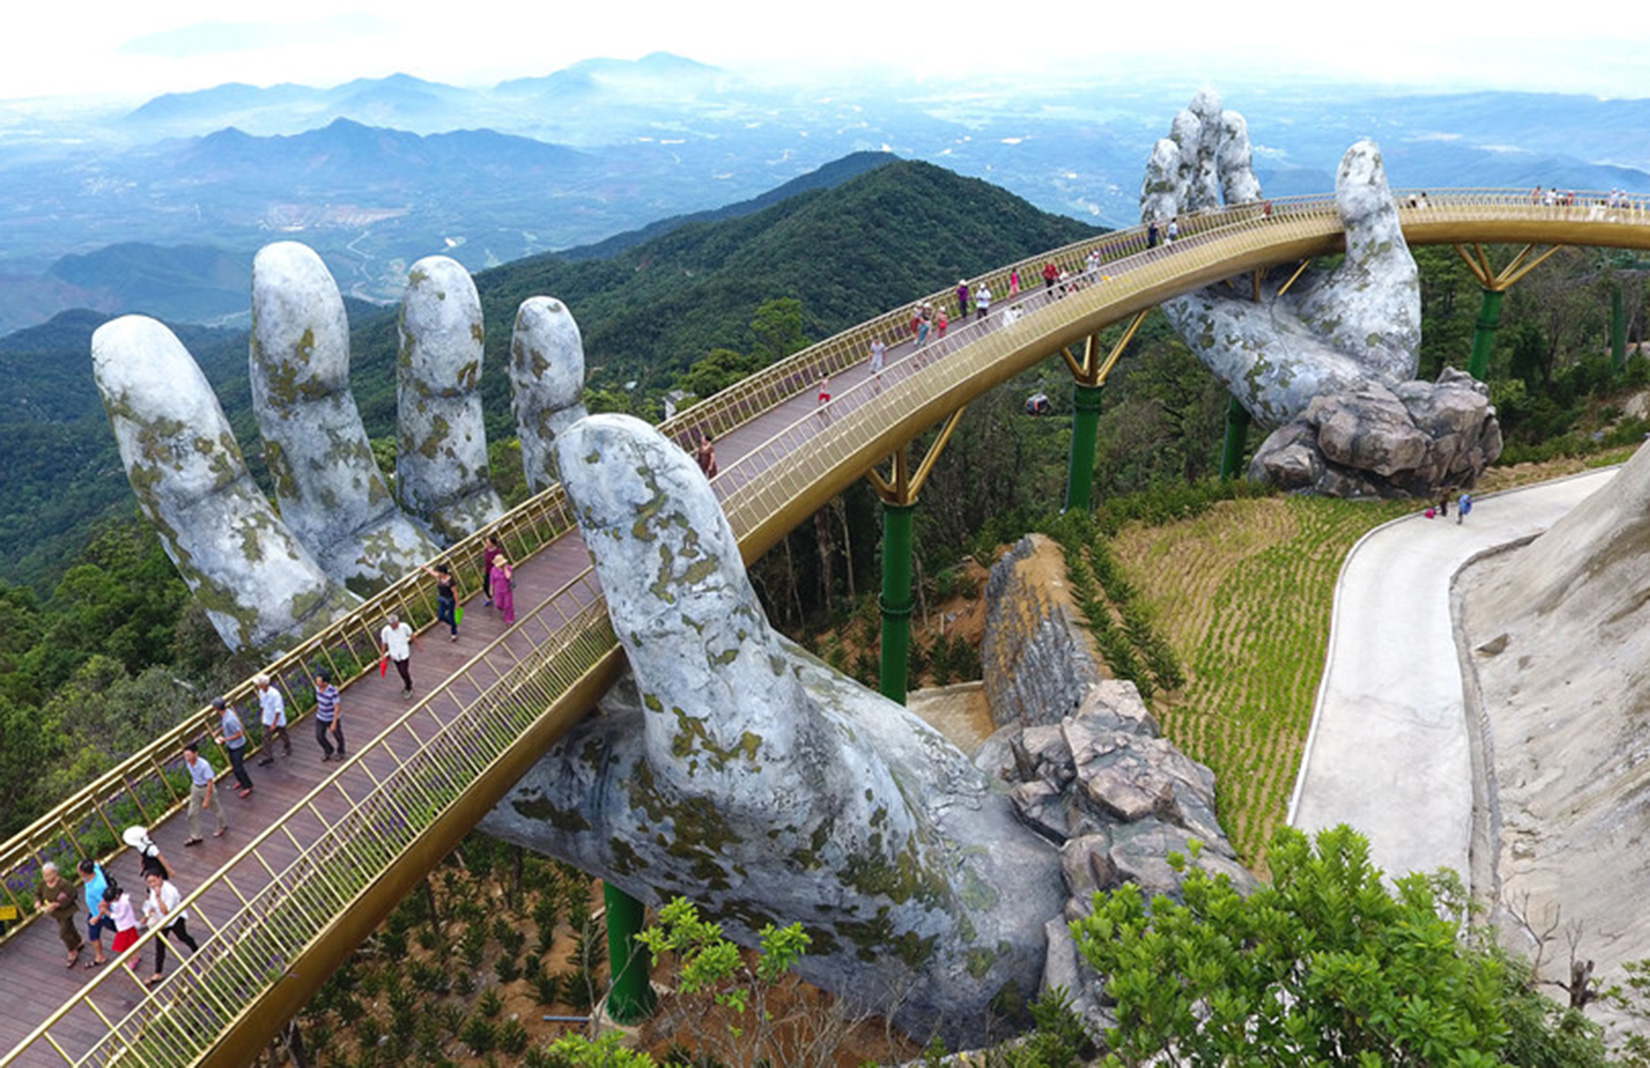 The Golden Bridge in Ba Na Hills resort, Vietnam. Image: The Spaces